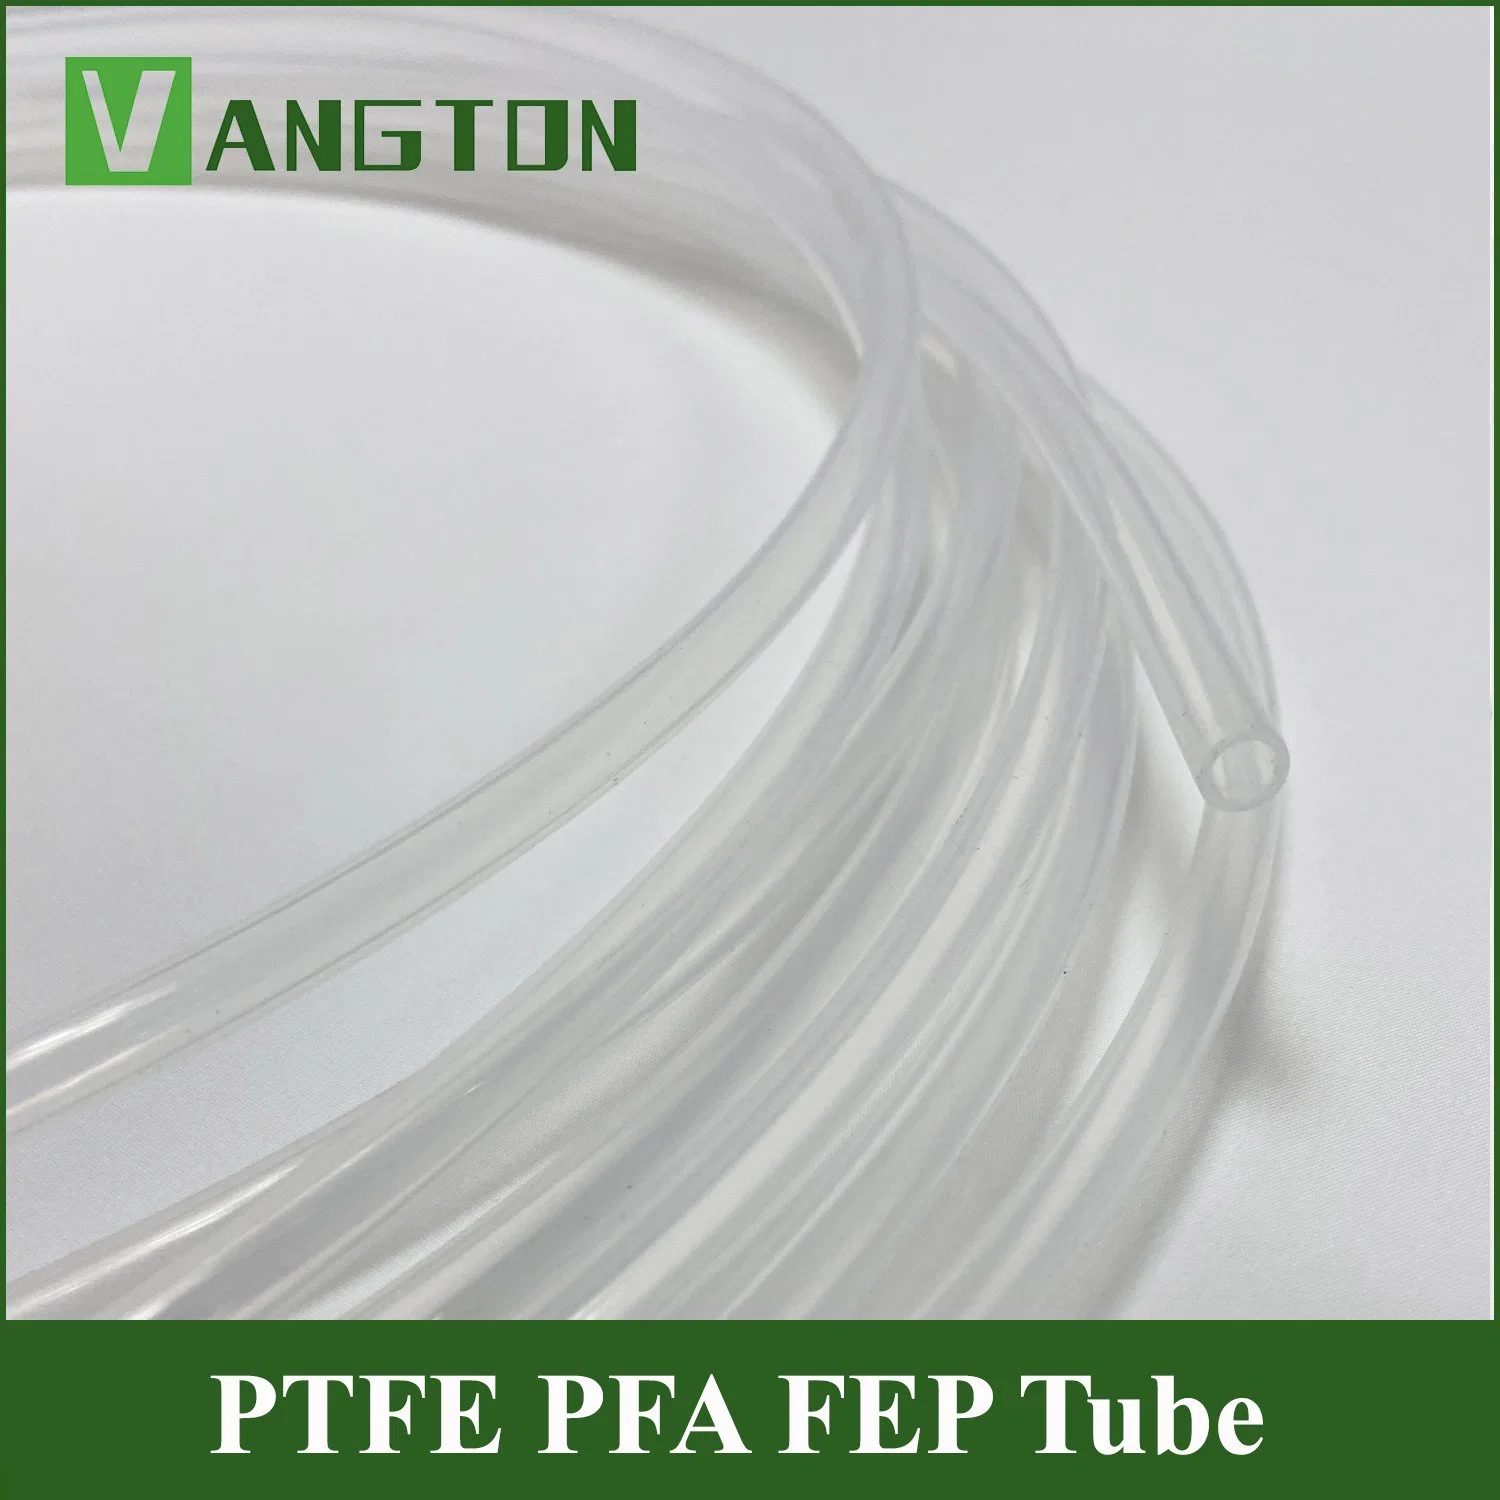 Blanco 100% PTFE virgen casquillo/tubo extruido/tubo de plástico PTFE